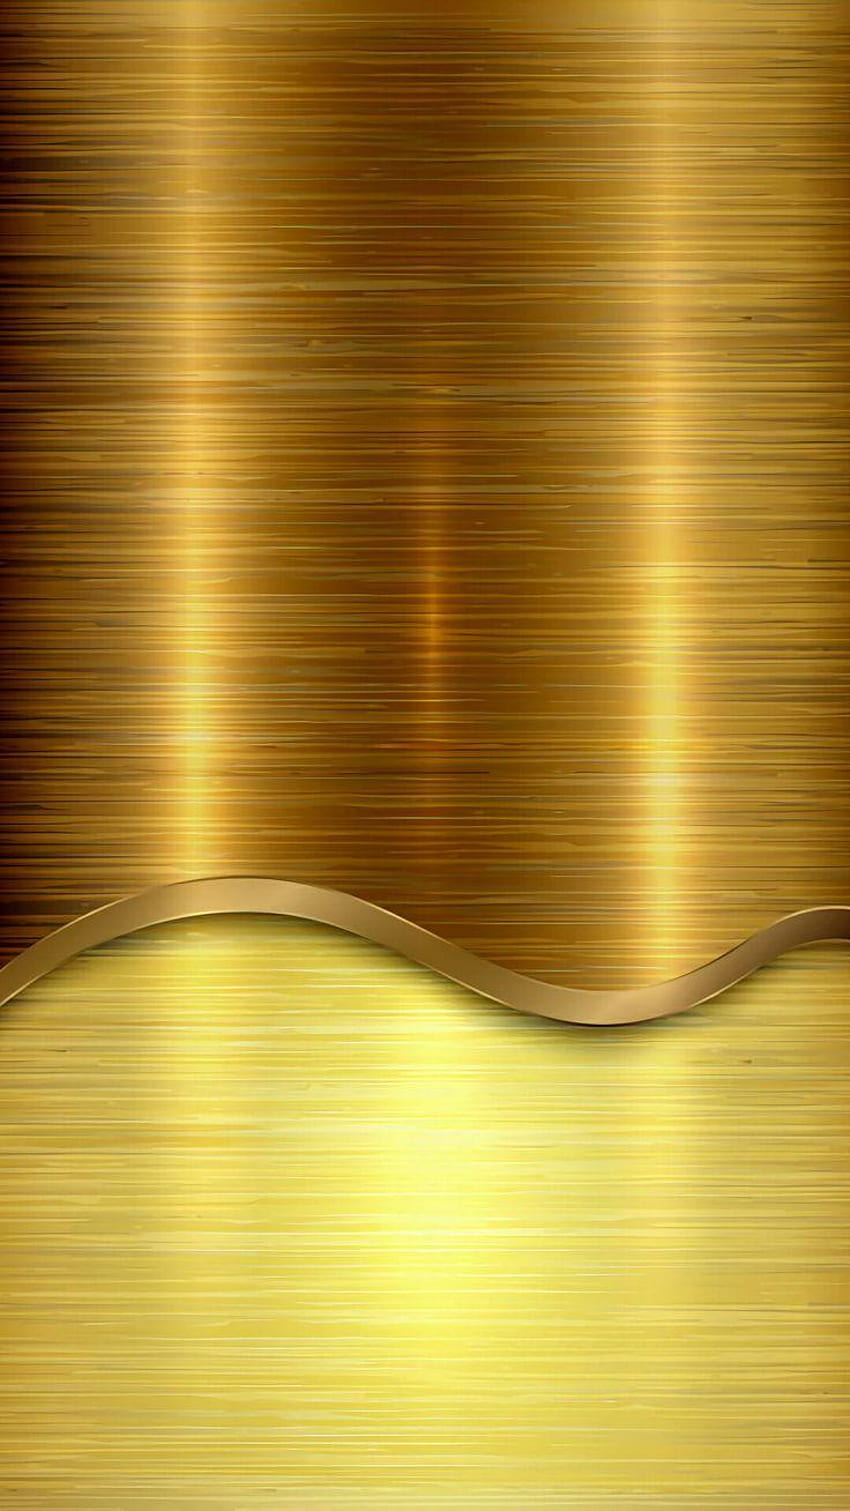 Plain golden HD wallpapers | Pxfuel